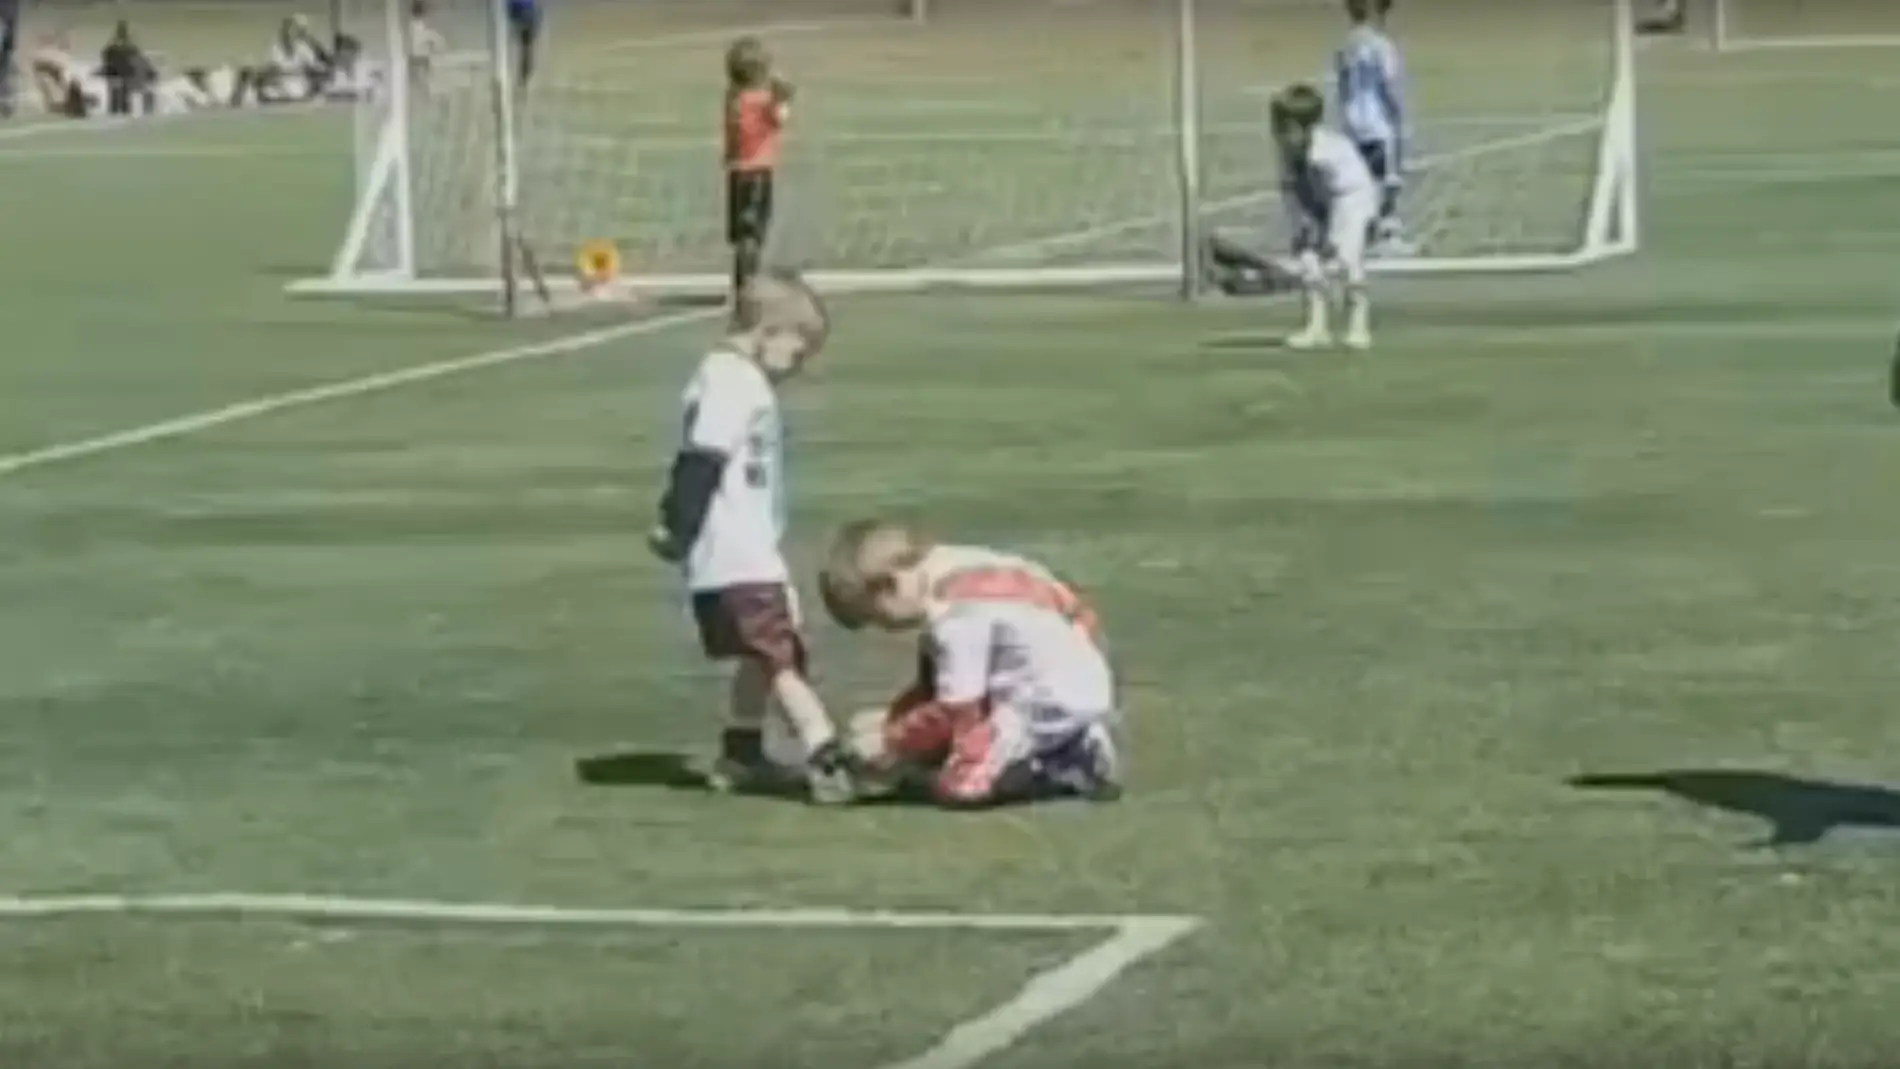 Un niño ayuda a otro a atarse la bota durante un partido en Argentina